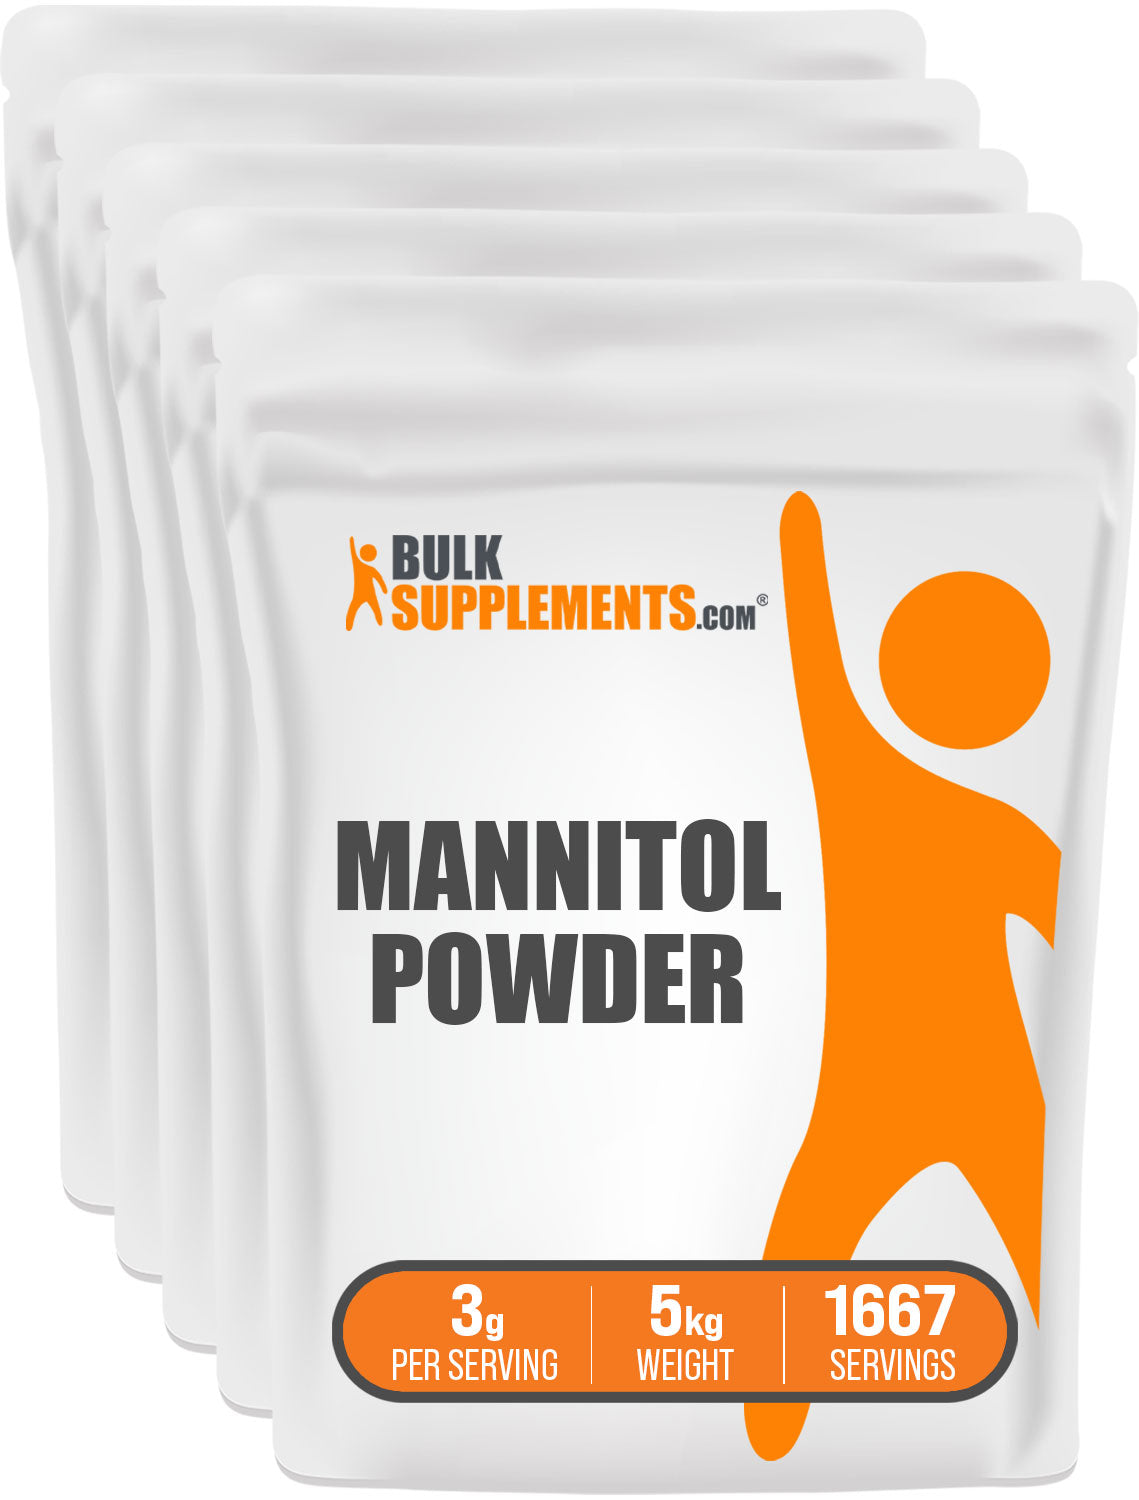 BulkSupplements Mannitol Powder 5kg bag